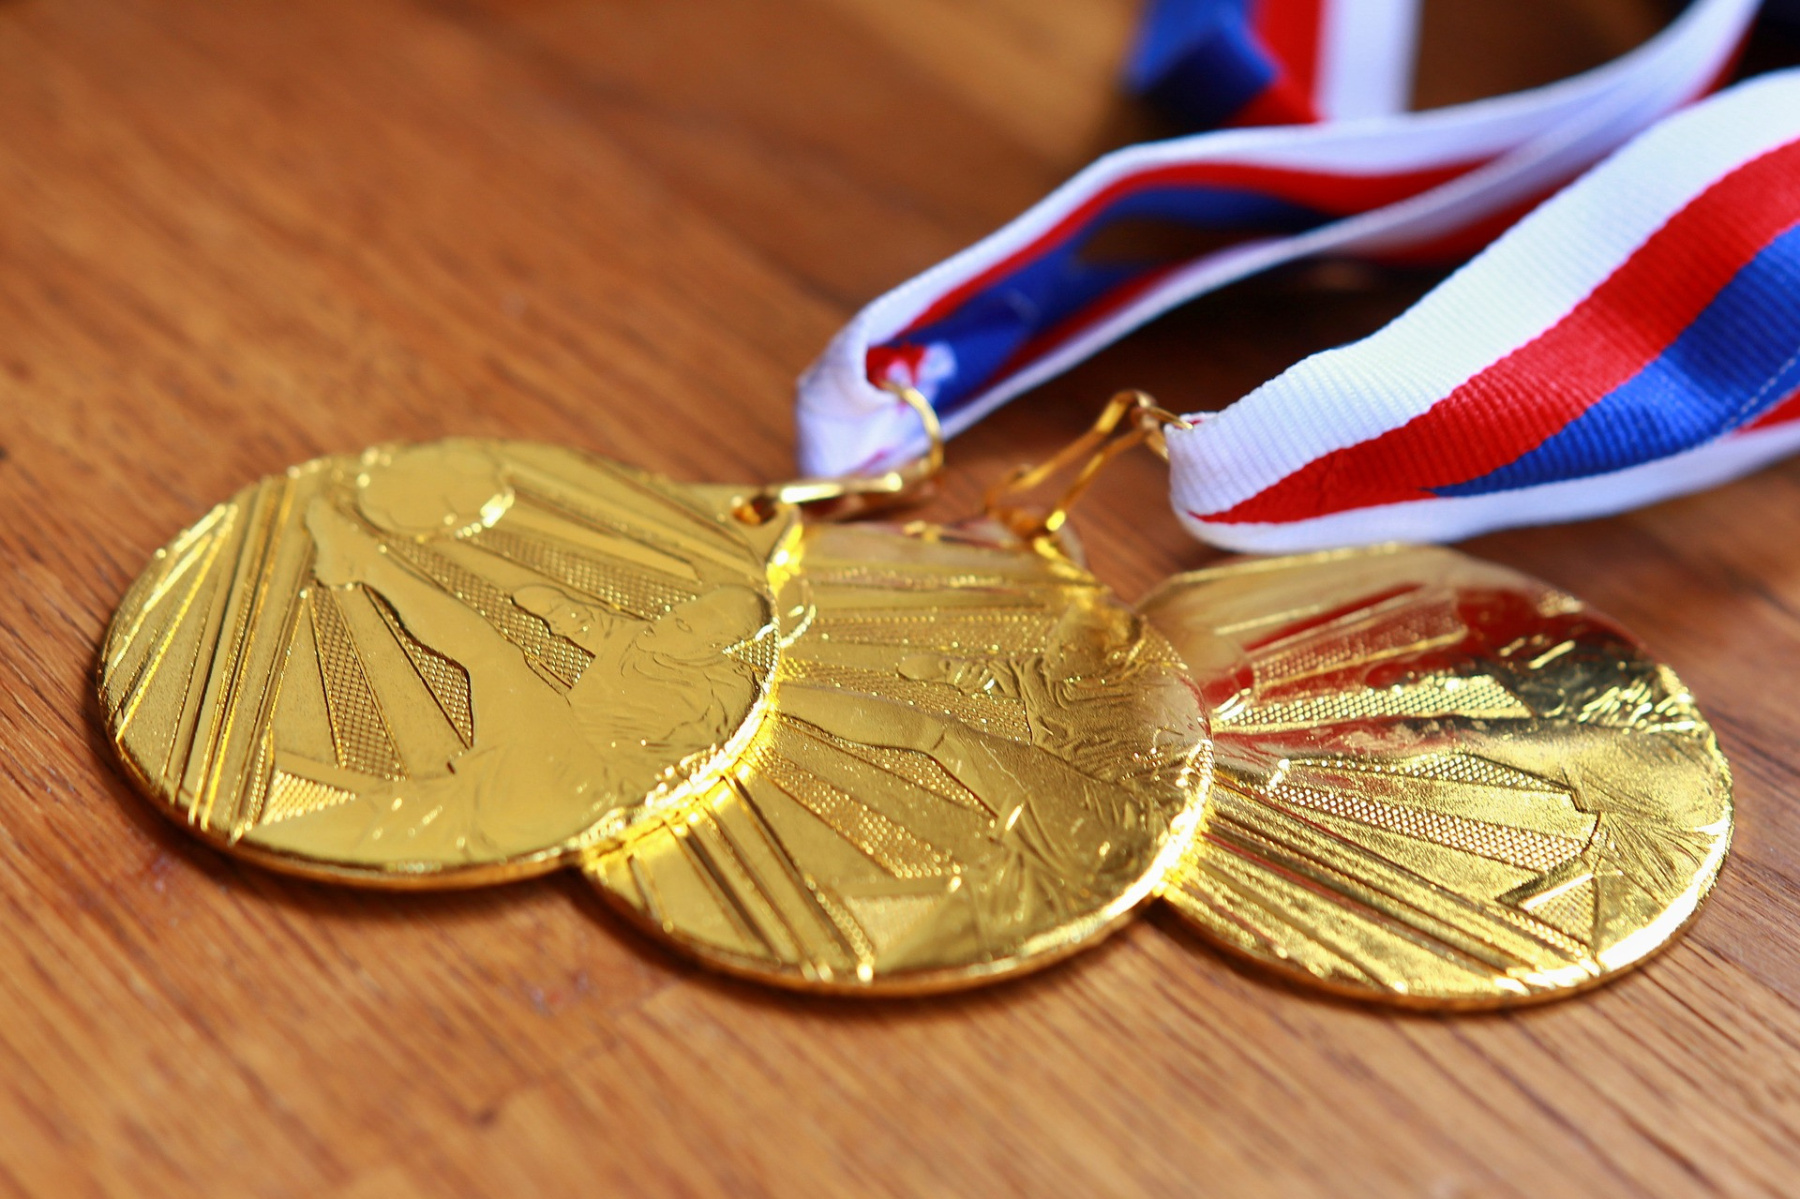 Une médaille olympique pour les enfants ukrainiens - Francs Jeux